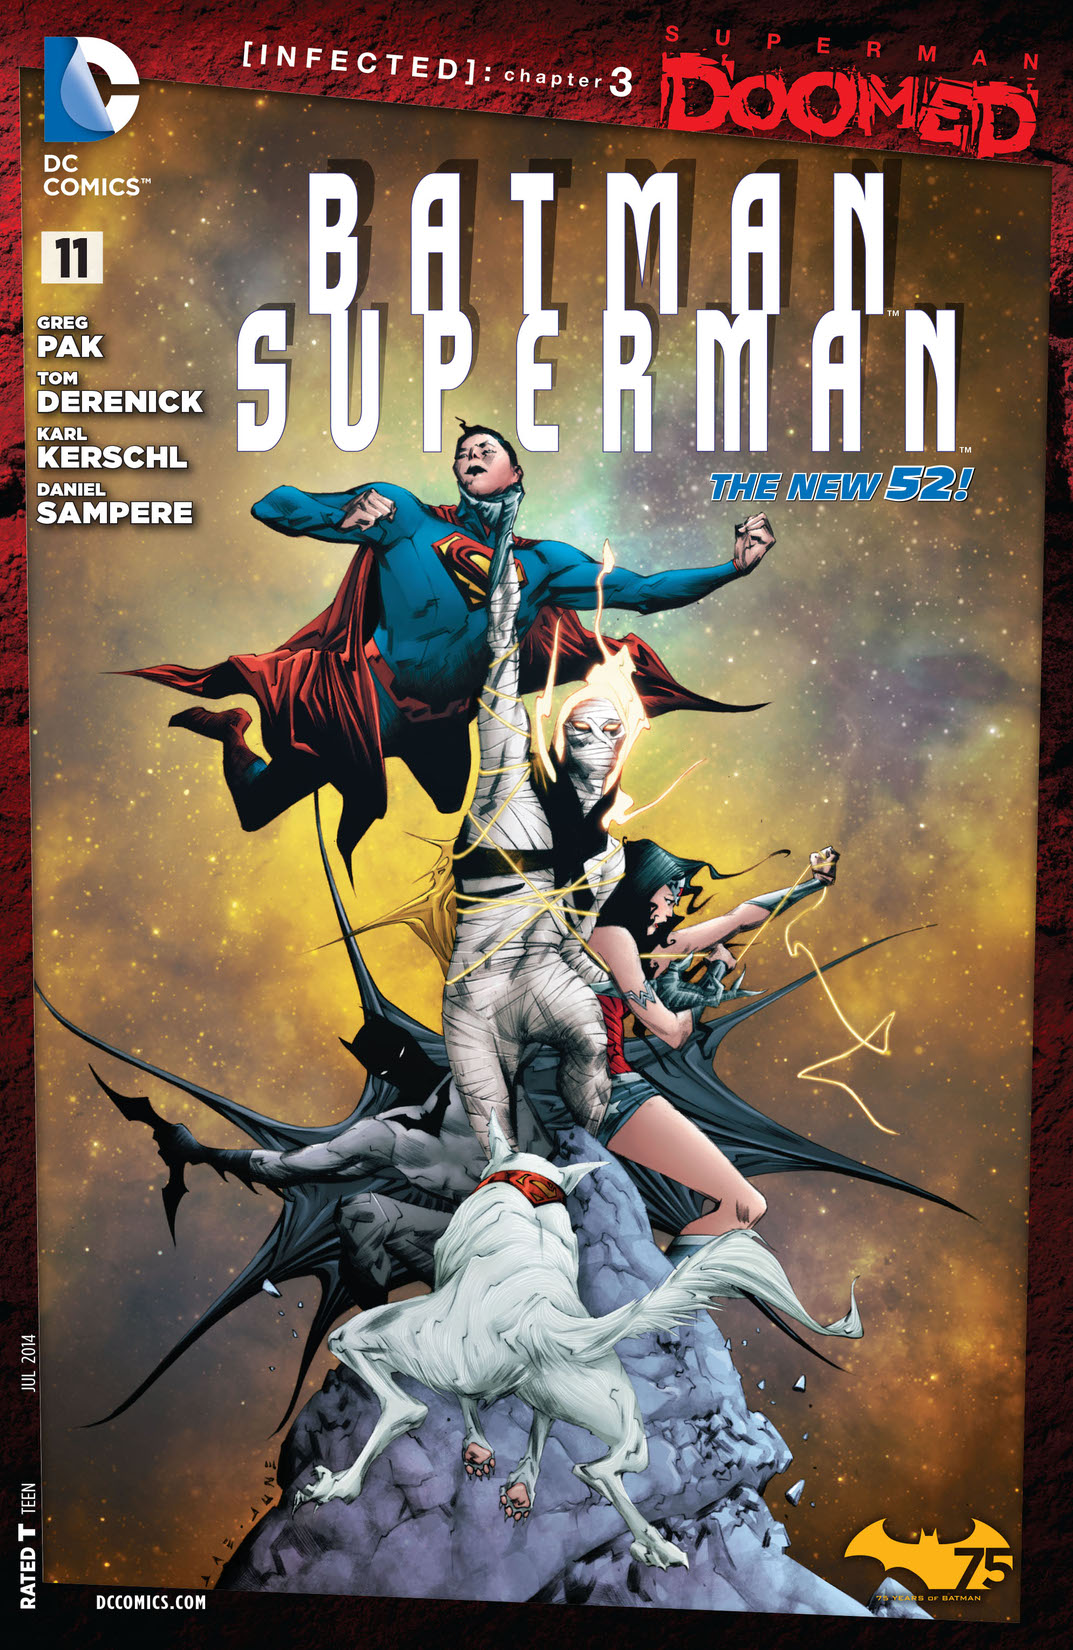 Batman/Superman (2013-) #11 preview images